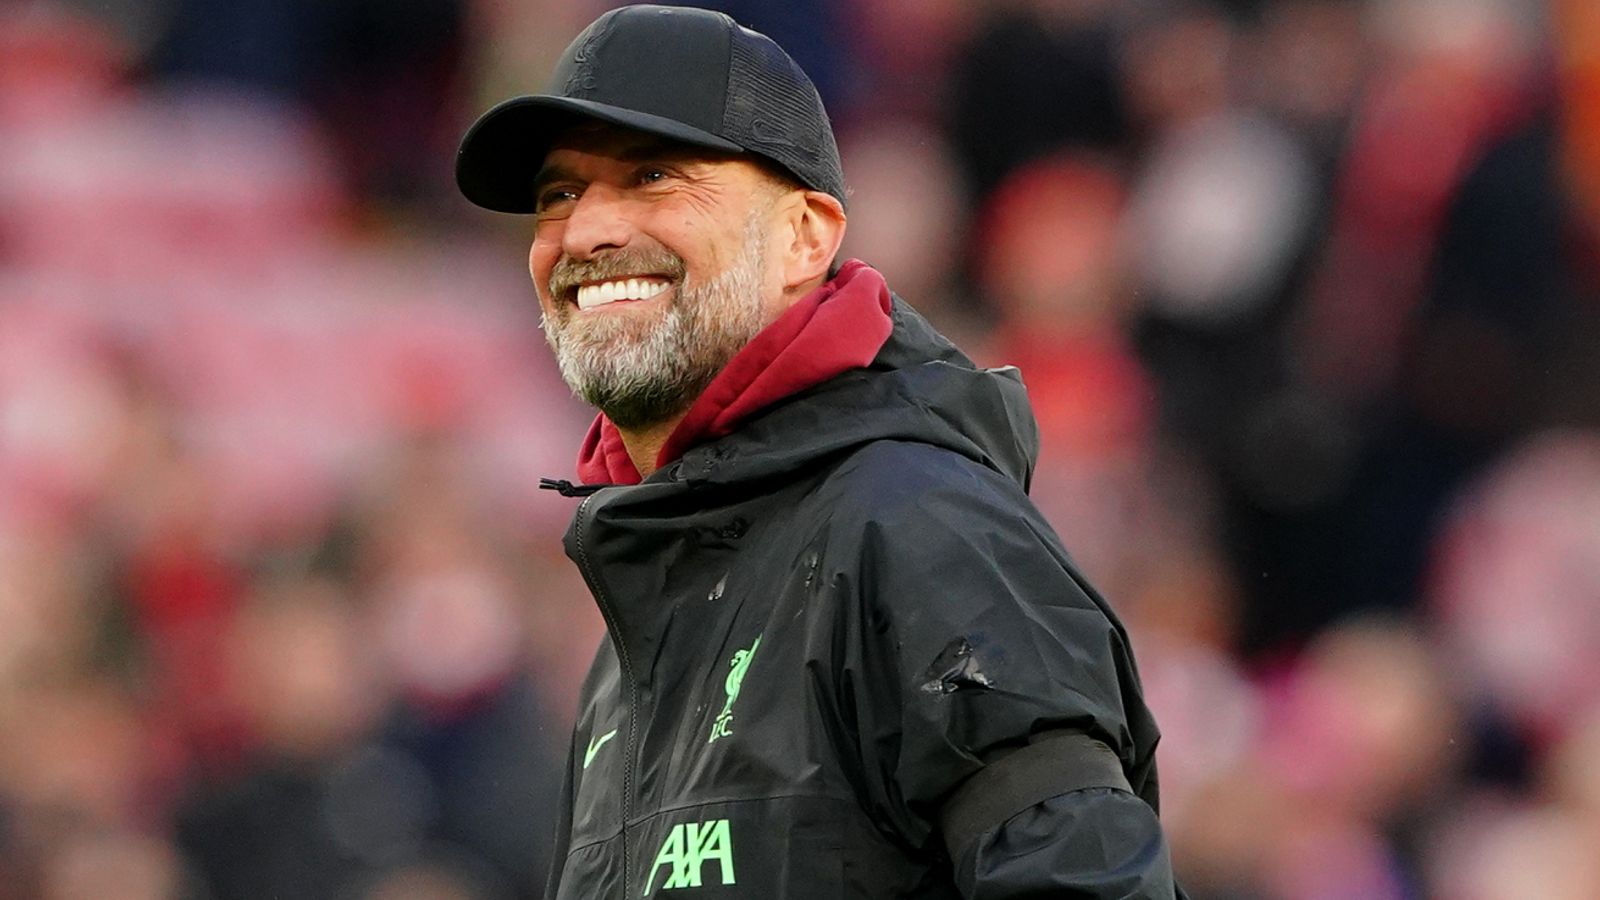 Jurgen Klopp: หัวหน้าทีม Liverpool เชื่อว่าการสูญเสีย 7-0 น่าจะกระตุ้นแมนเชสเตอร์ยูไนเต็ดก่อนการกลับมาของ Anfield |  ข่าวฟุตบอล